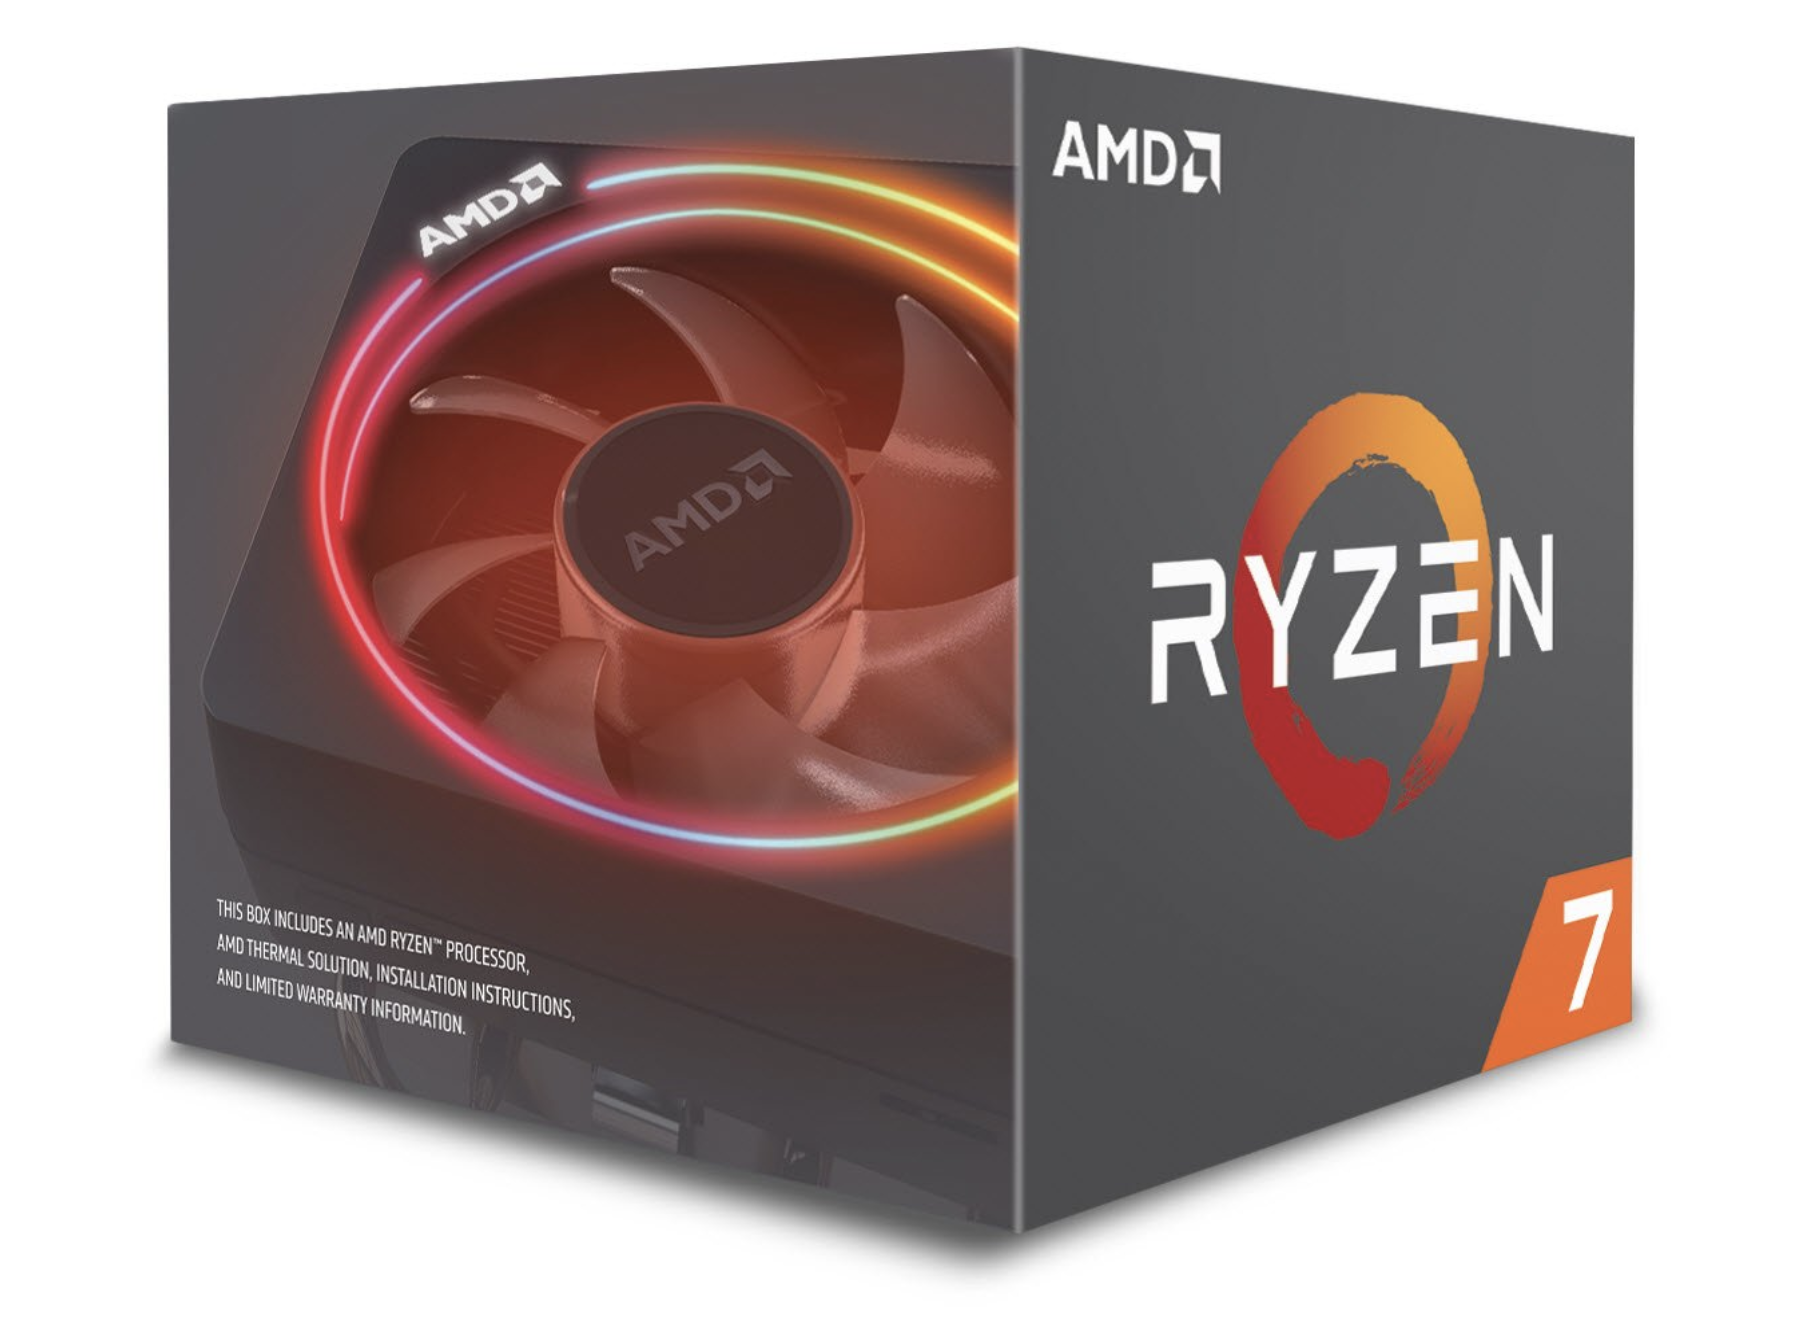 AMDが人気。「インテル入ってない」PCが急増中 : IT速報